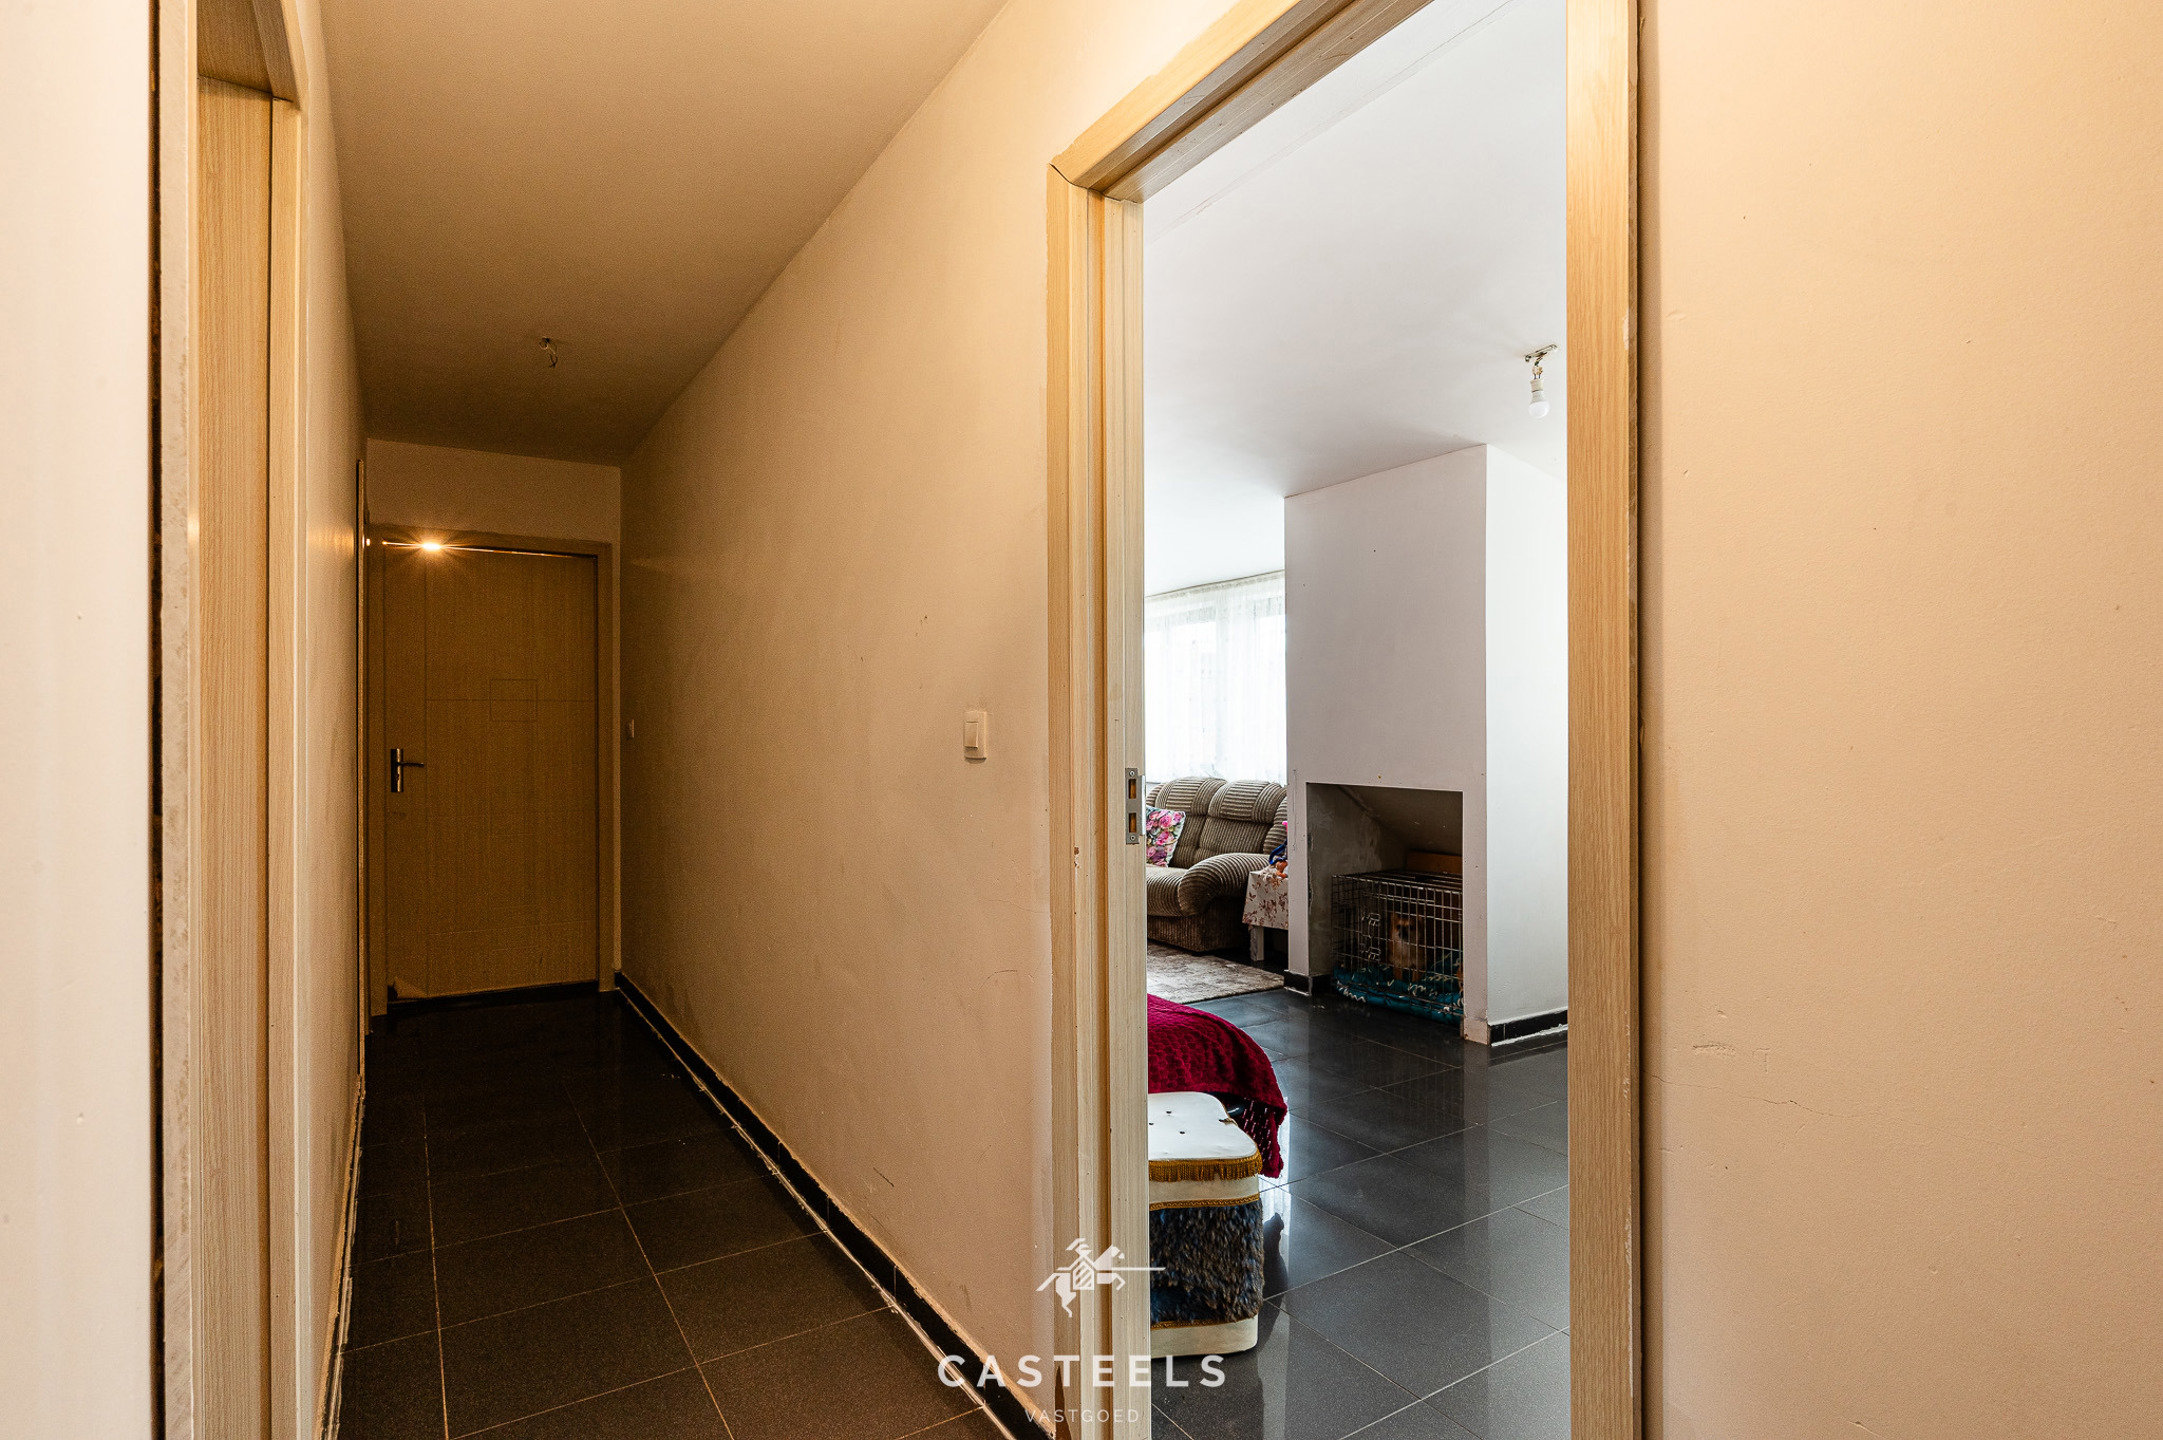 Afbeelding Goed gelegen 2 slaapkamer appartement (EPC B) + klein terras - Casteels Vastgoed